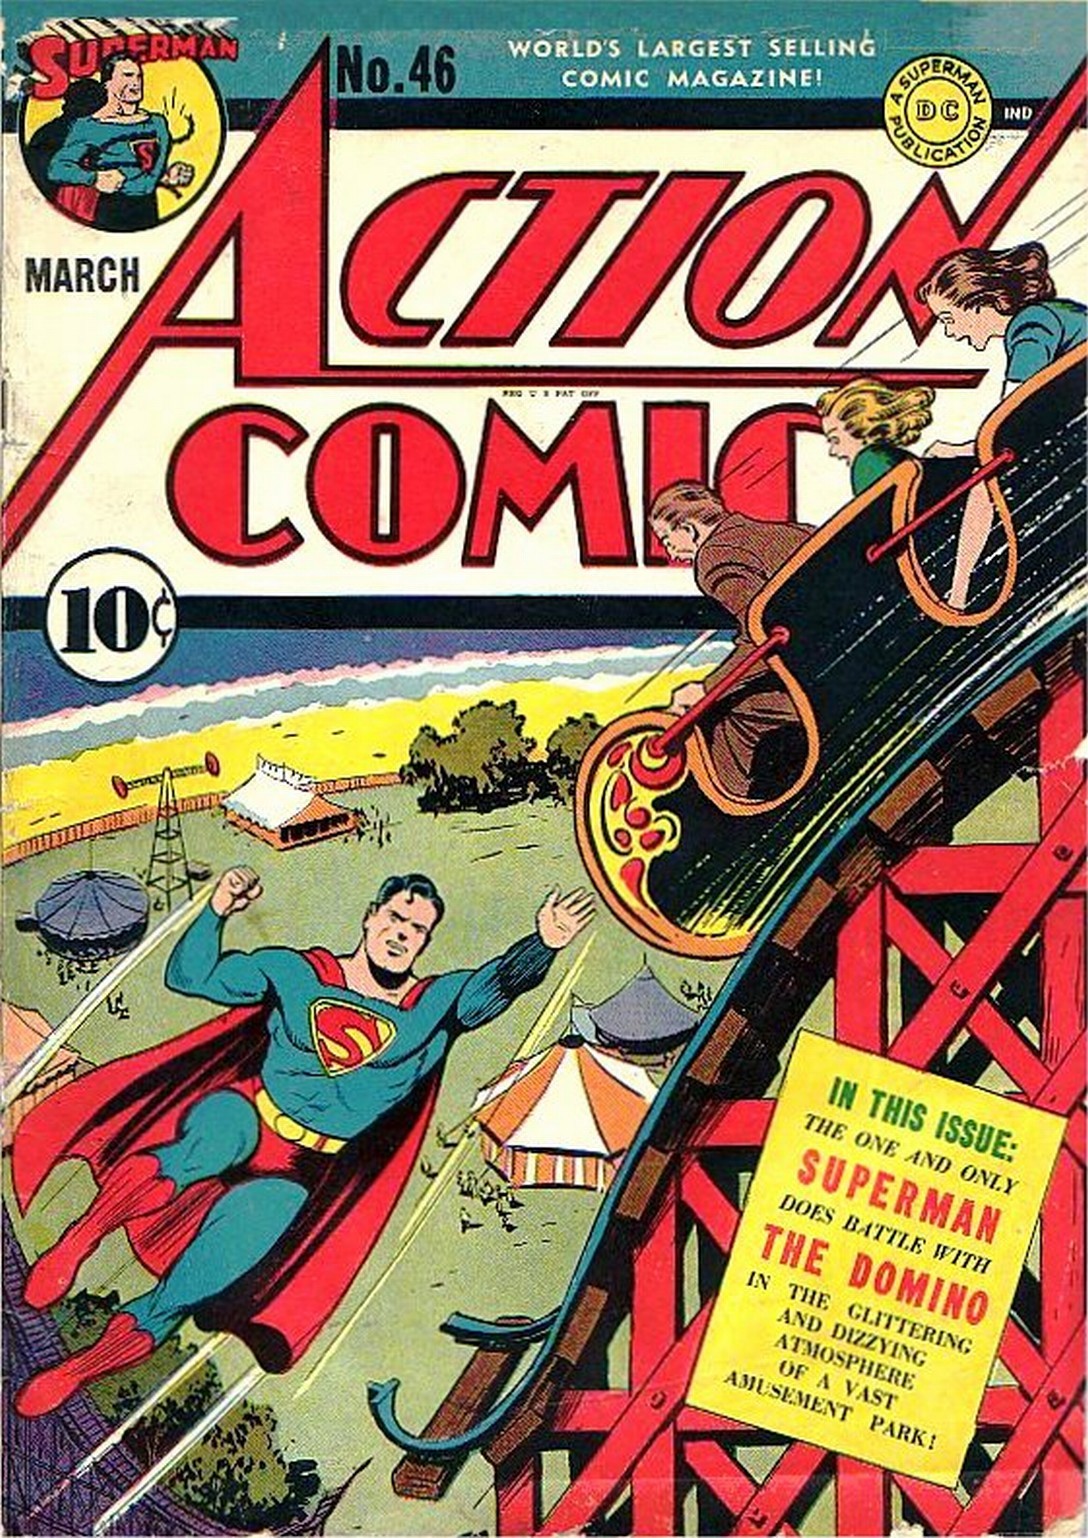 Action Comics Vol. 1 #46